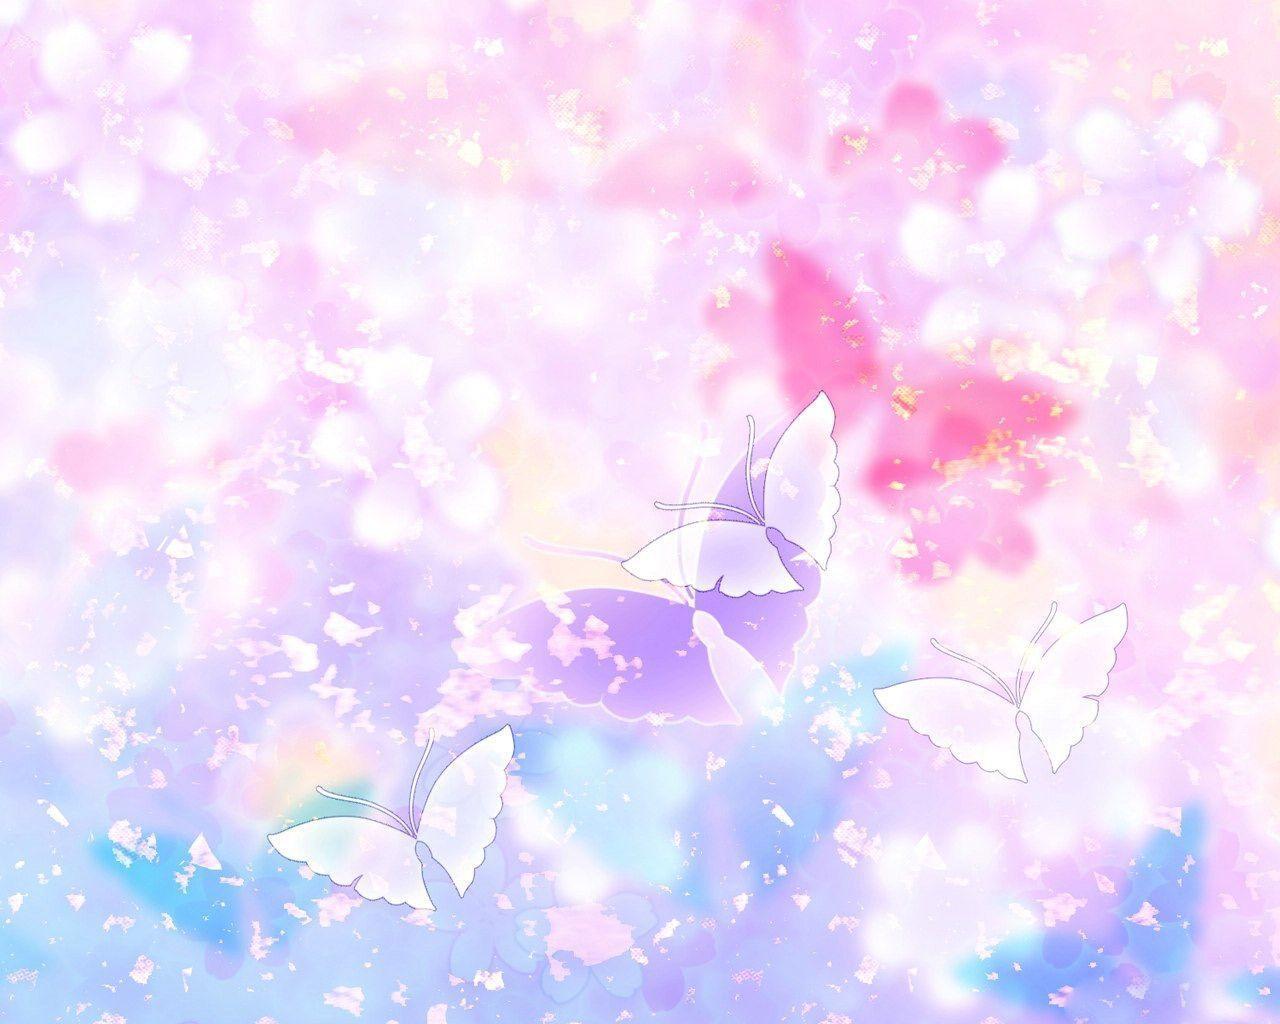 Flowers and Butterflies clipart desktop HD Wallpaper. High